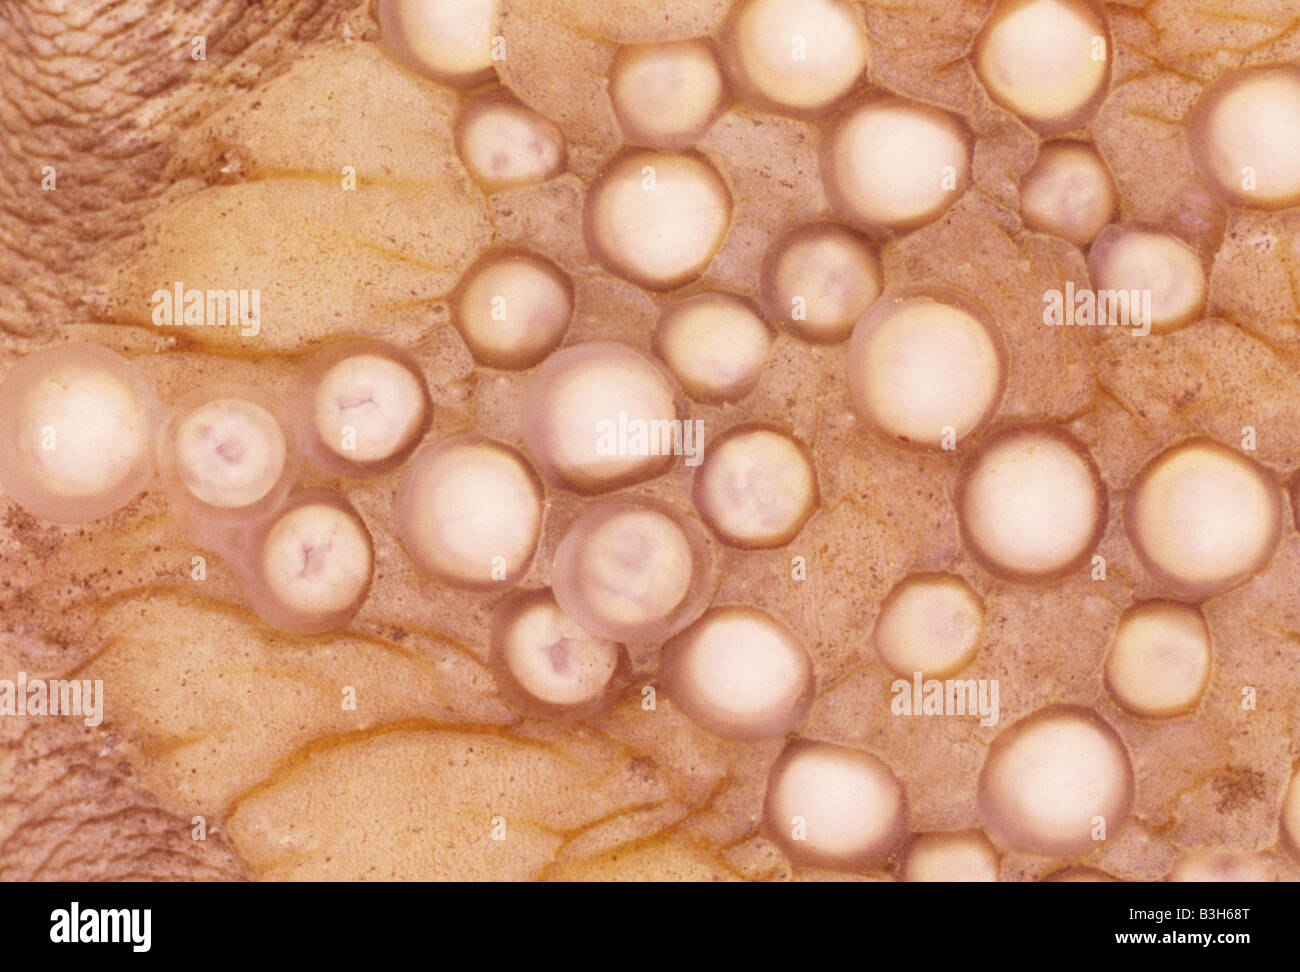 Surinam Toad femenino Pipa pipa muestra el detalle de los huevos adheridos a su espalda 6 horas después de la oviposición Foto de stock